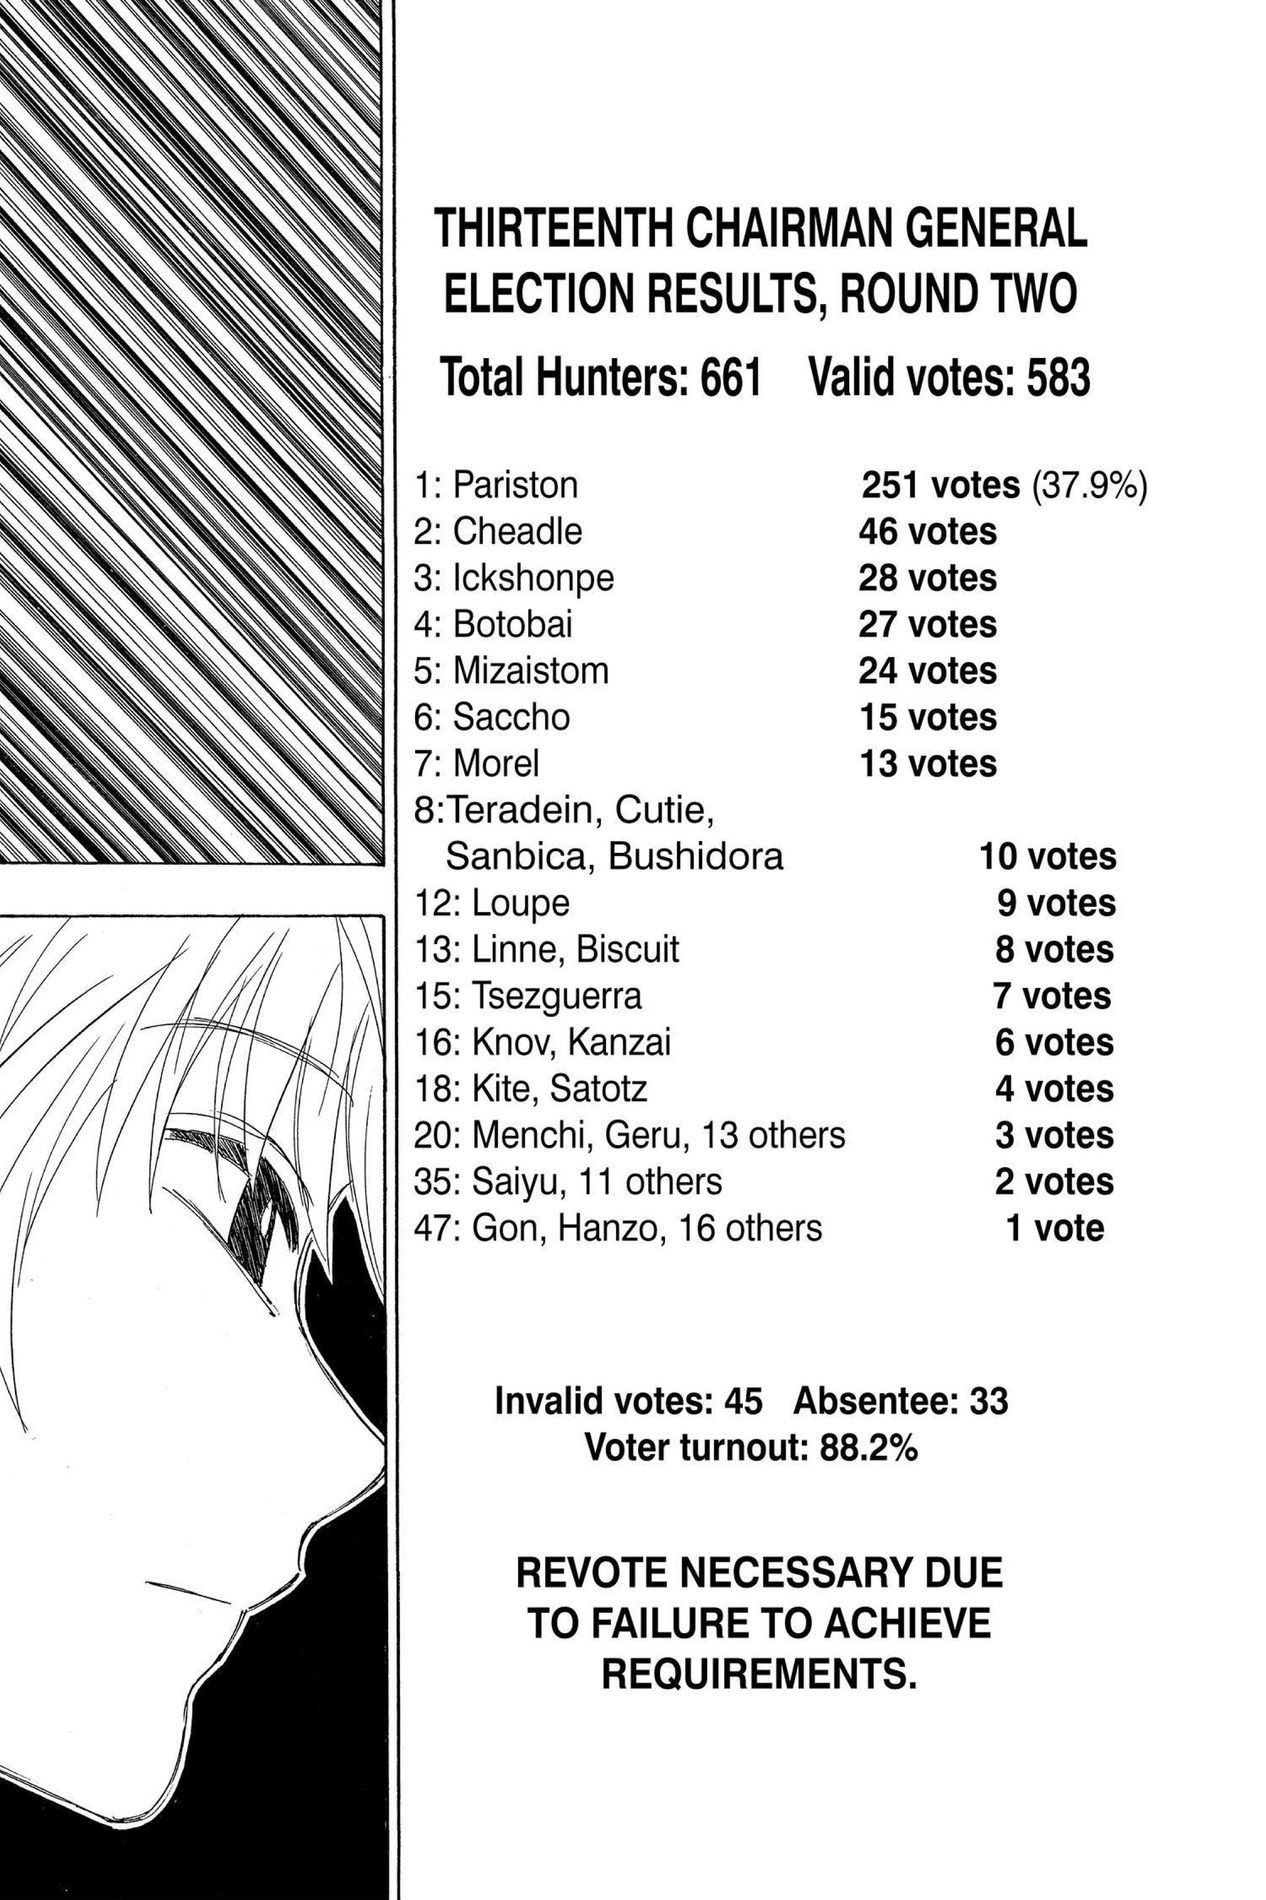 Hunter X Hunter, Chapter 321 - Hunter X Hunter Manga Online